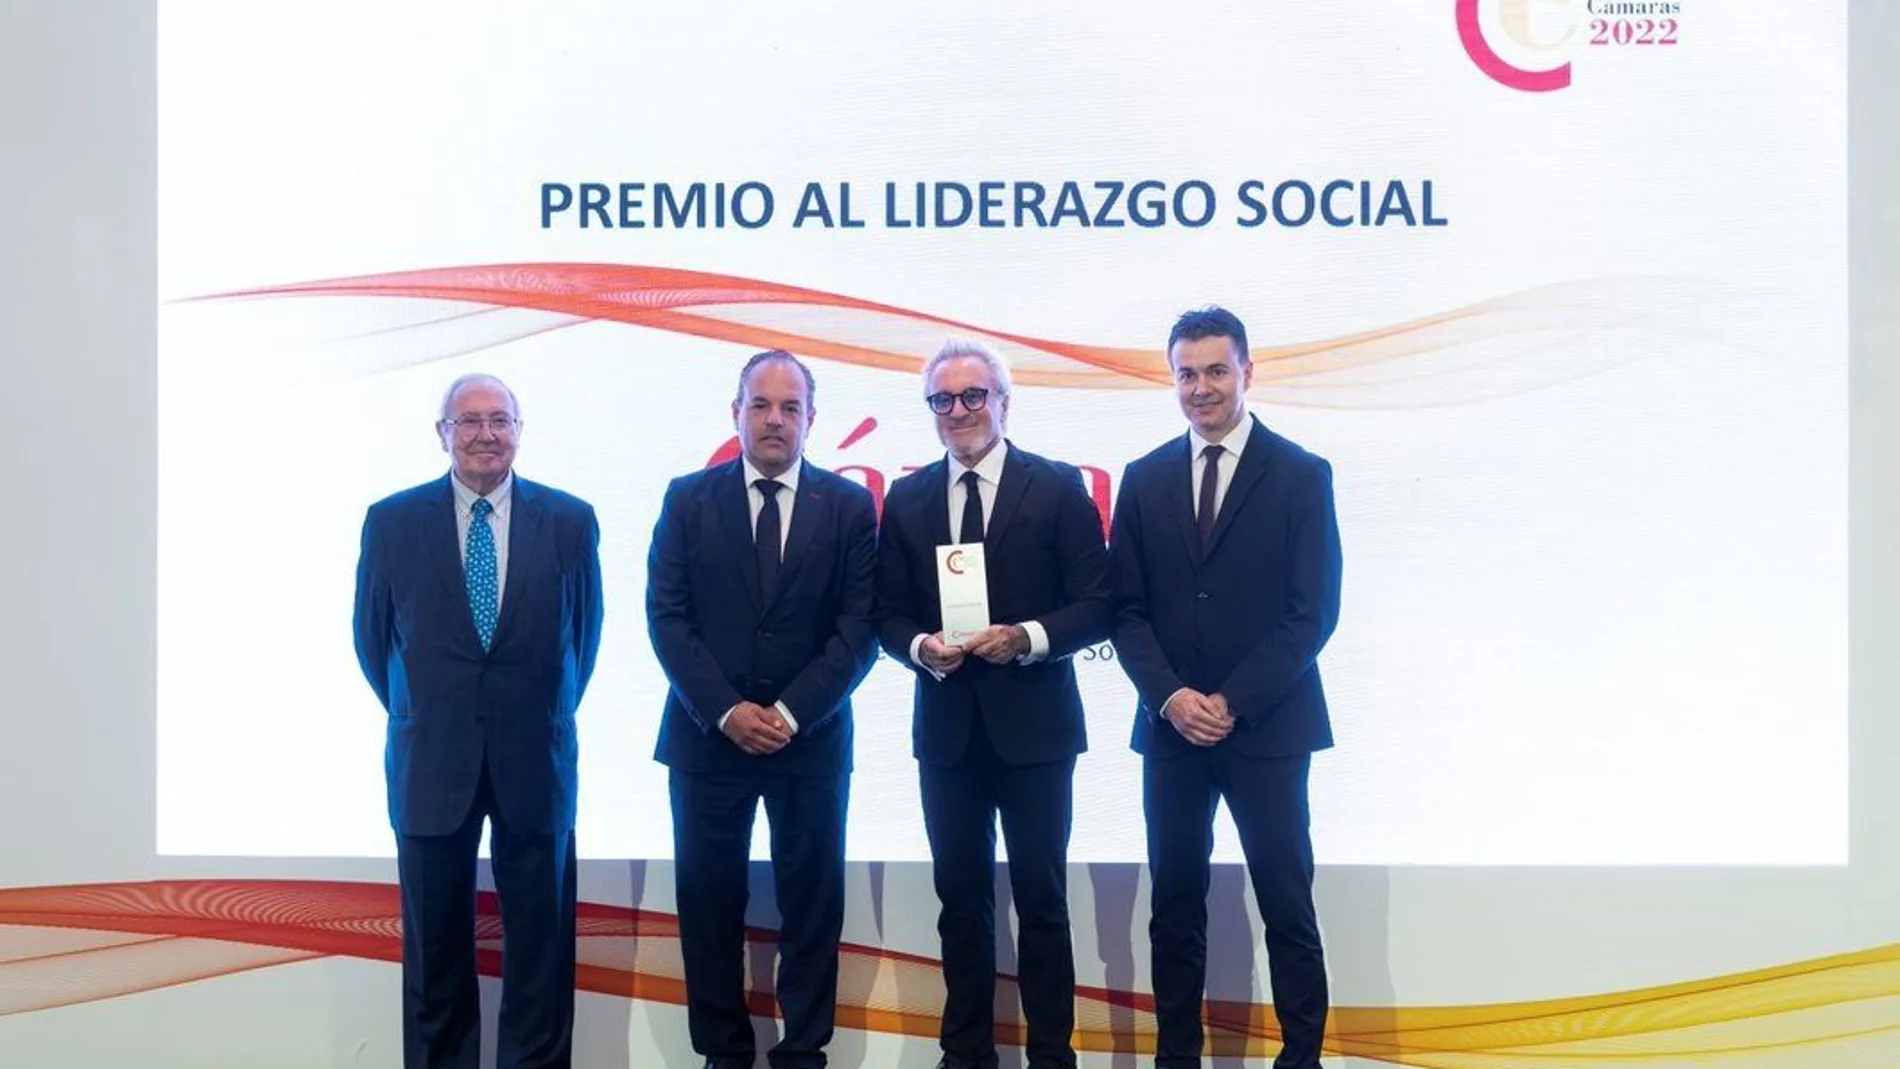 Alicante Gastronómica Solidaria recibe el Premio Cámaras 2022 al Liderazgo Social de Cámara España 